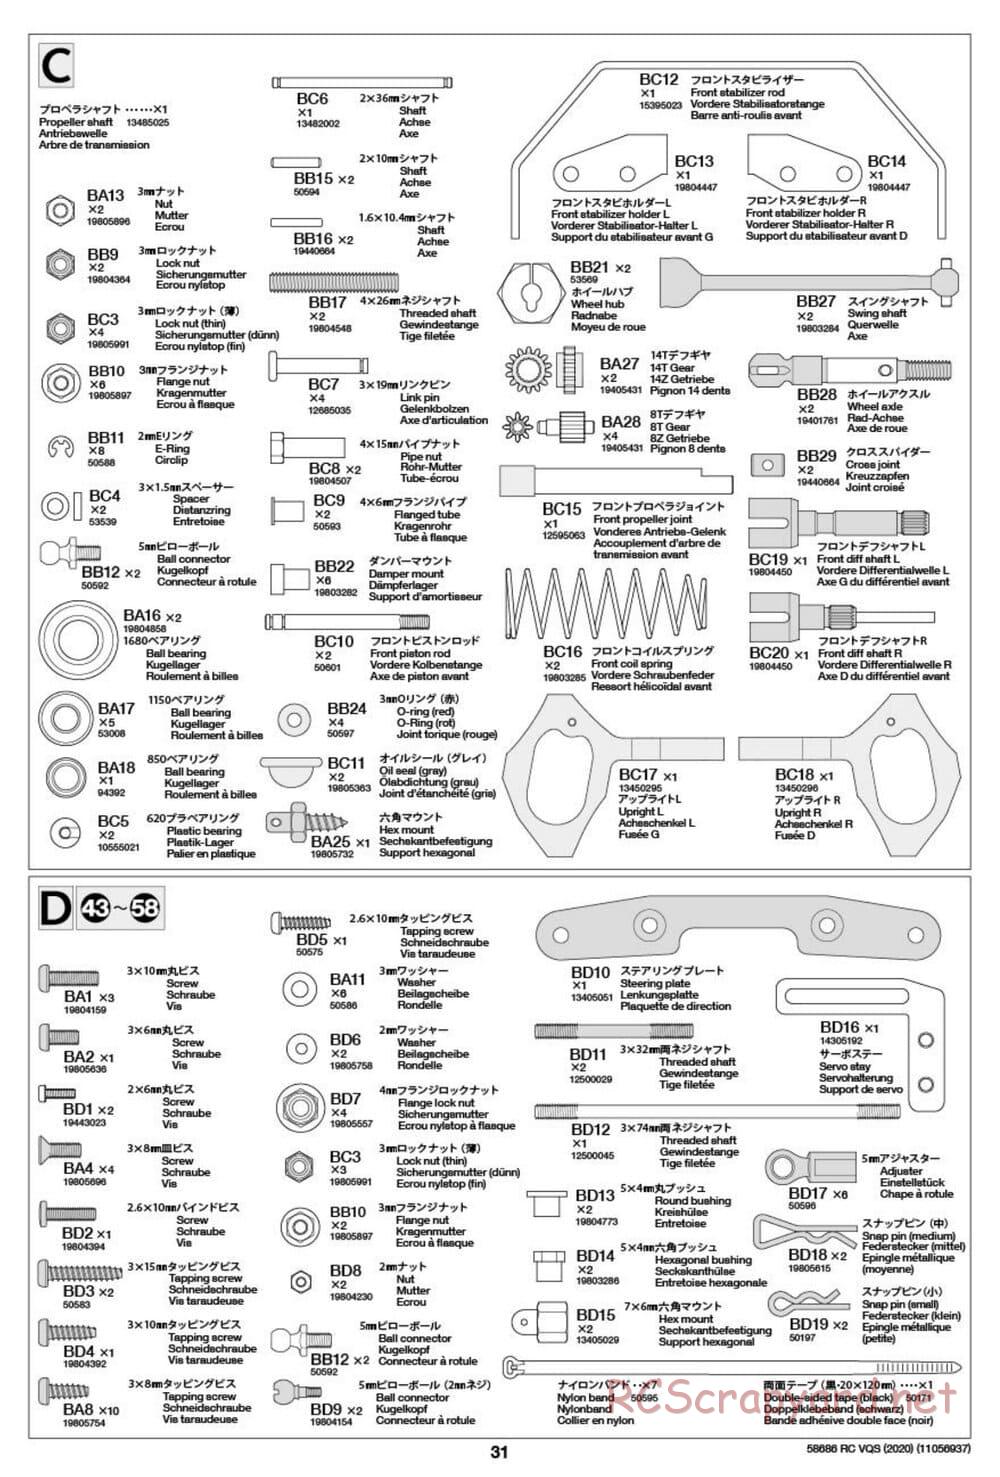 Tamiya - VQS (2020) - AV Chassis - Manual - Page 31